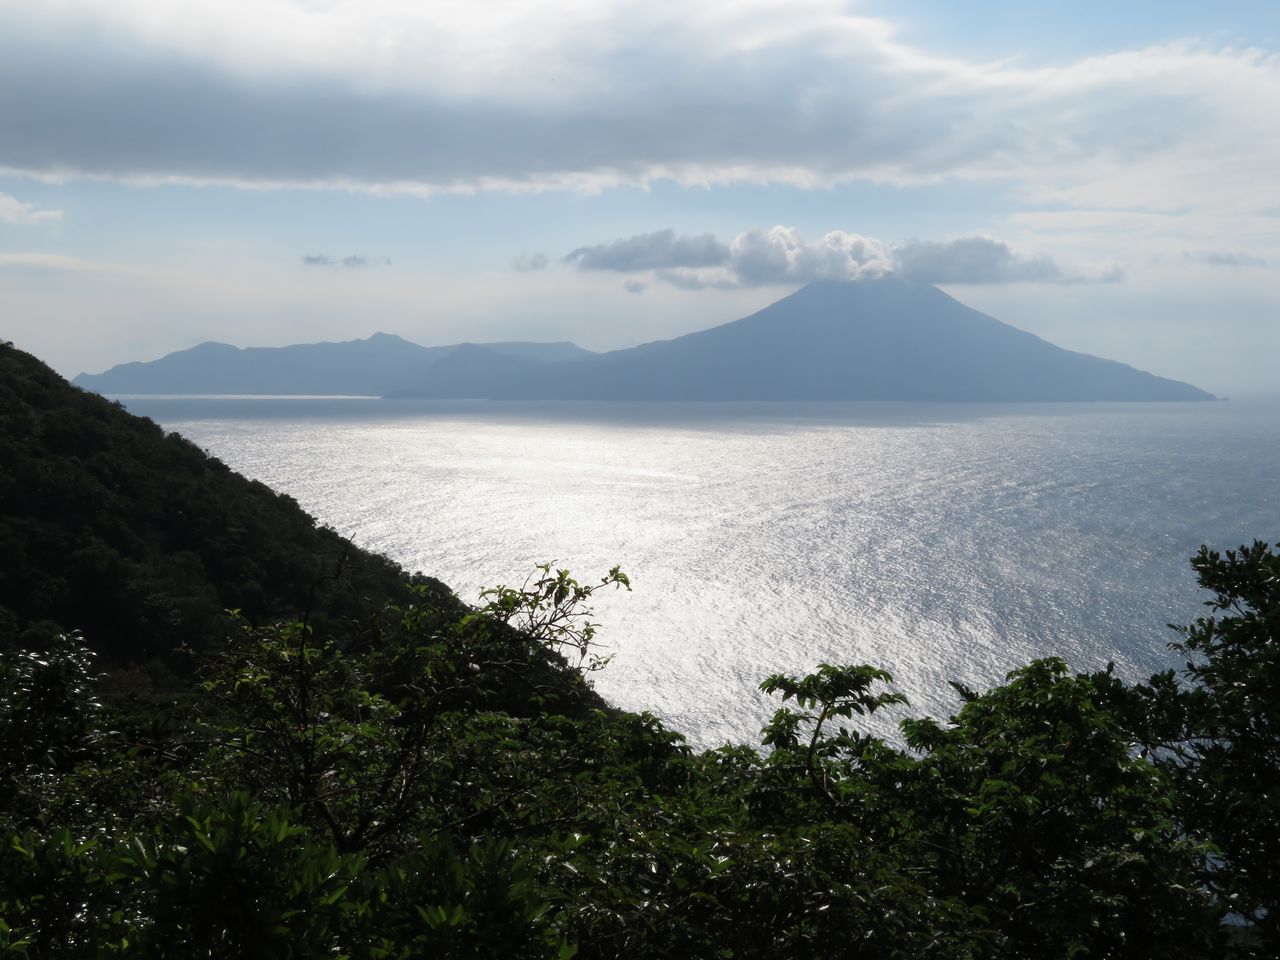 L’île Nakanoshima, vue de loin (Pixta)